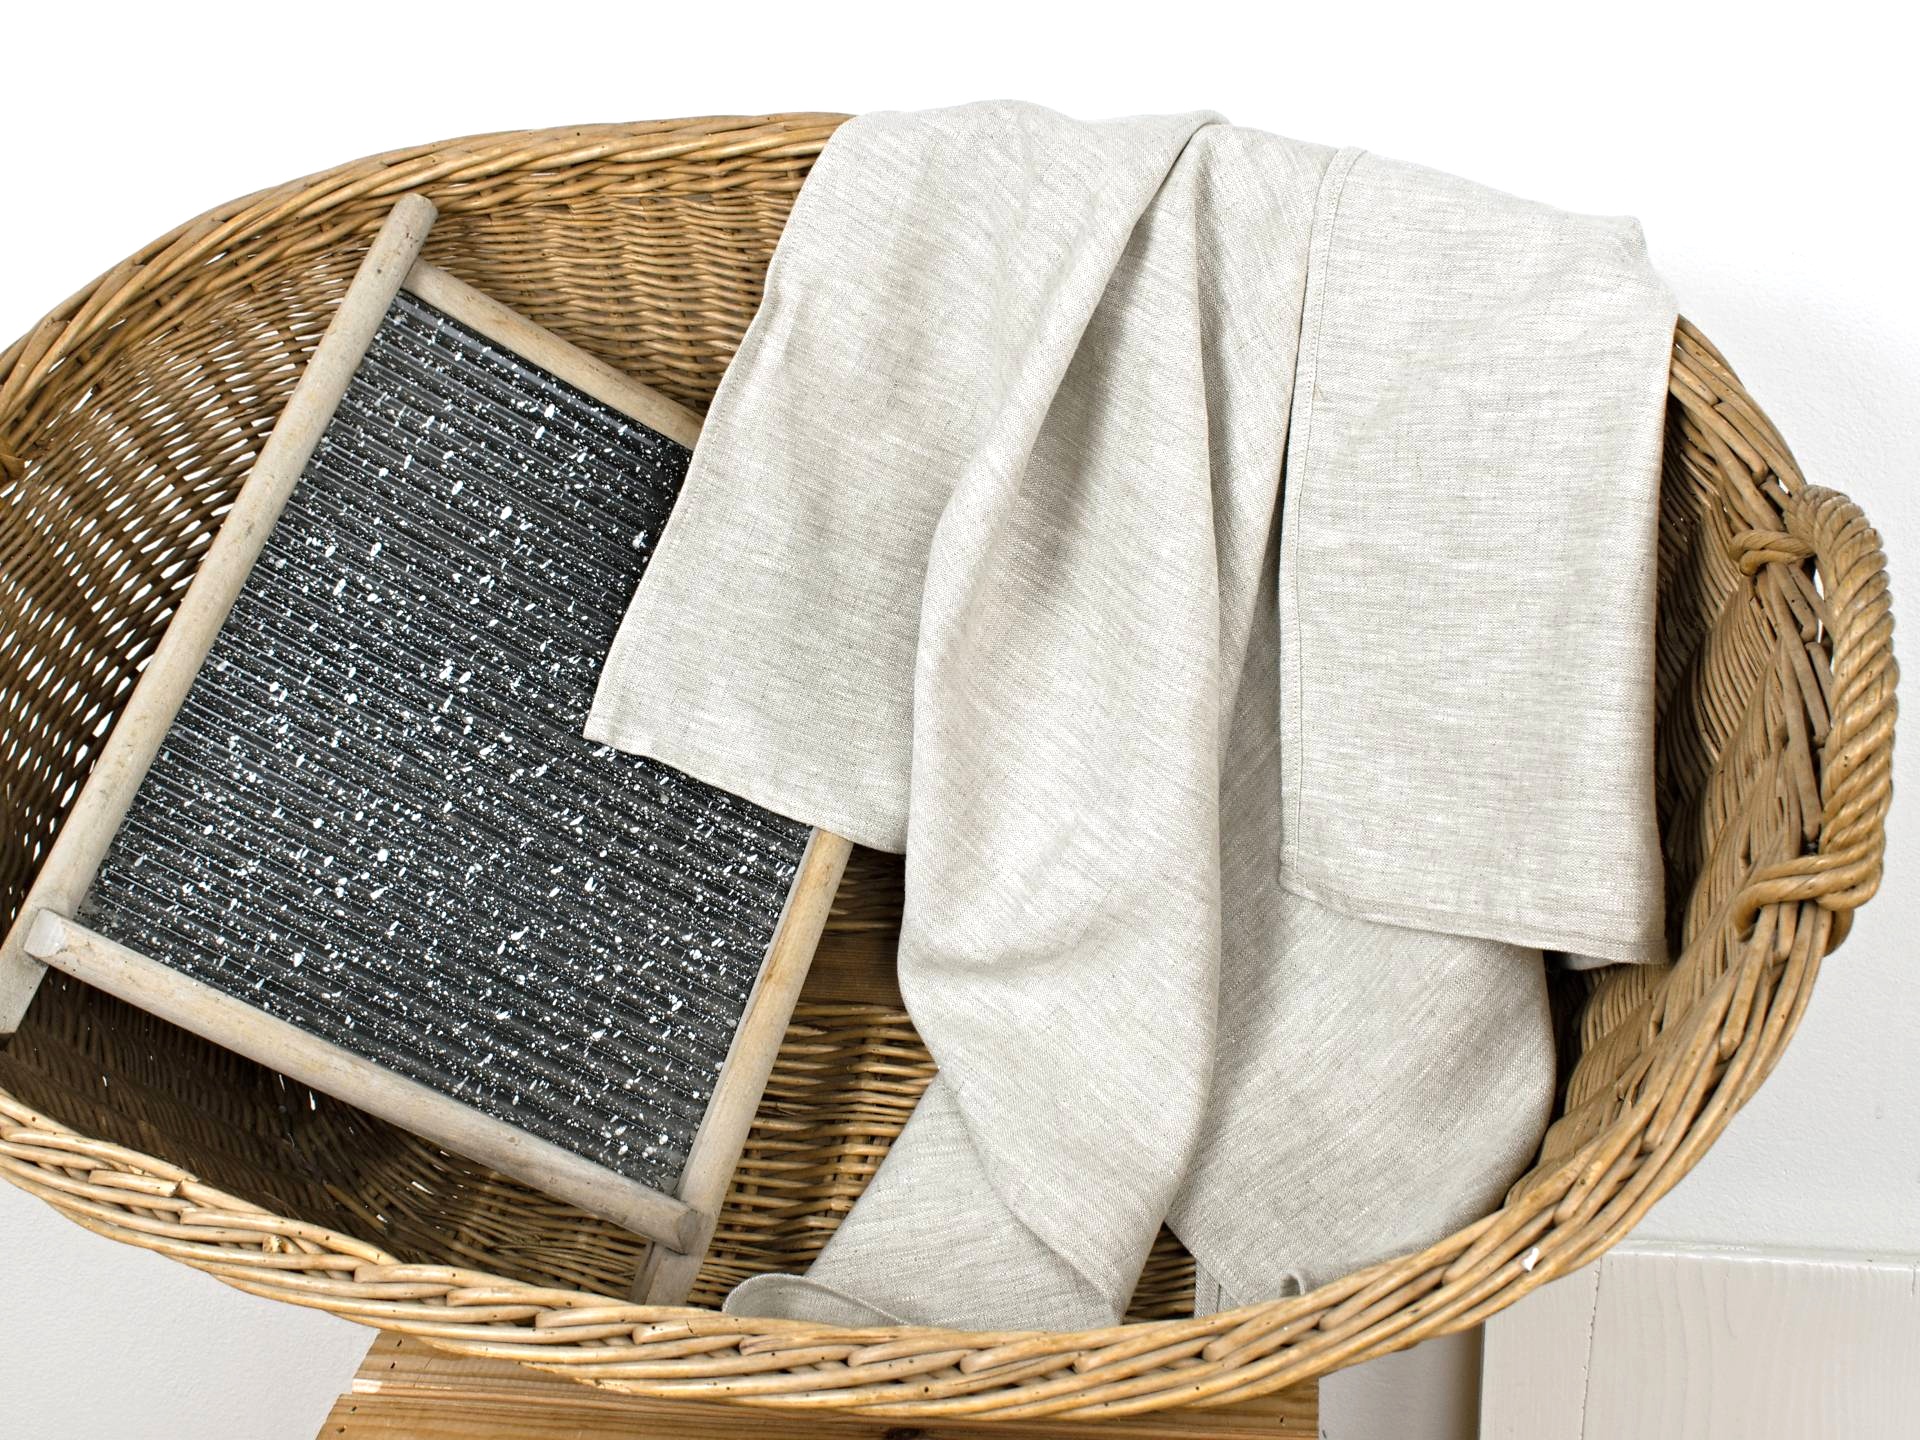 Lněný ručník - přírodní melír 45 x 90 cm